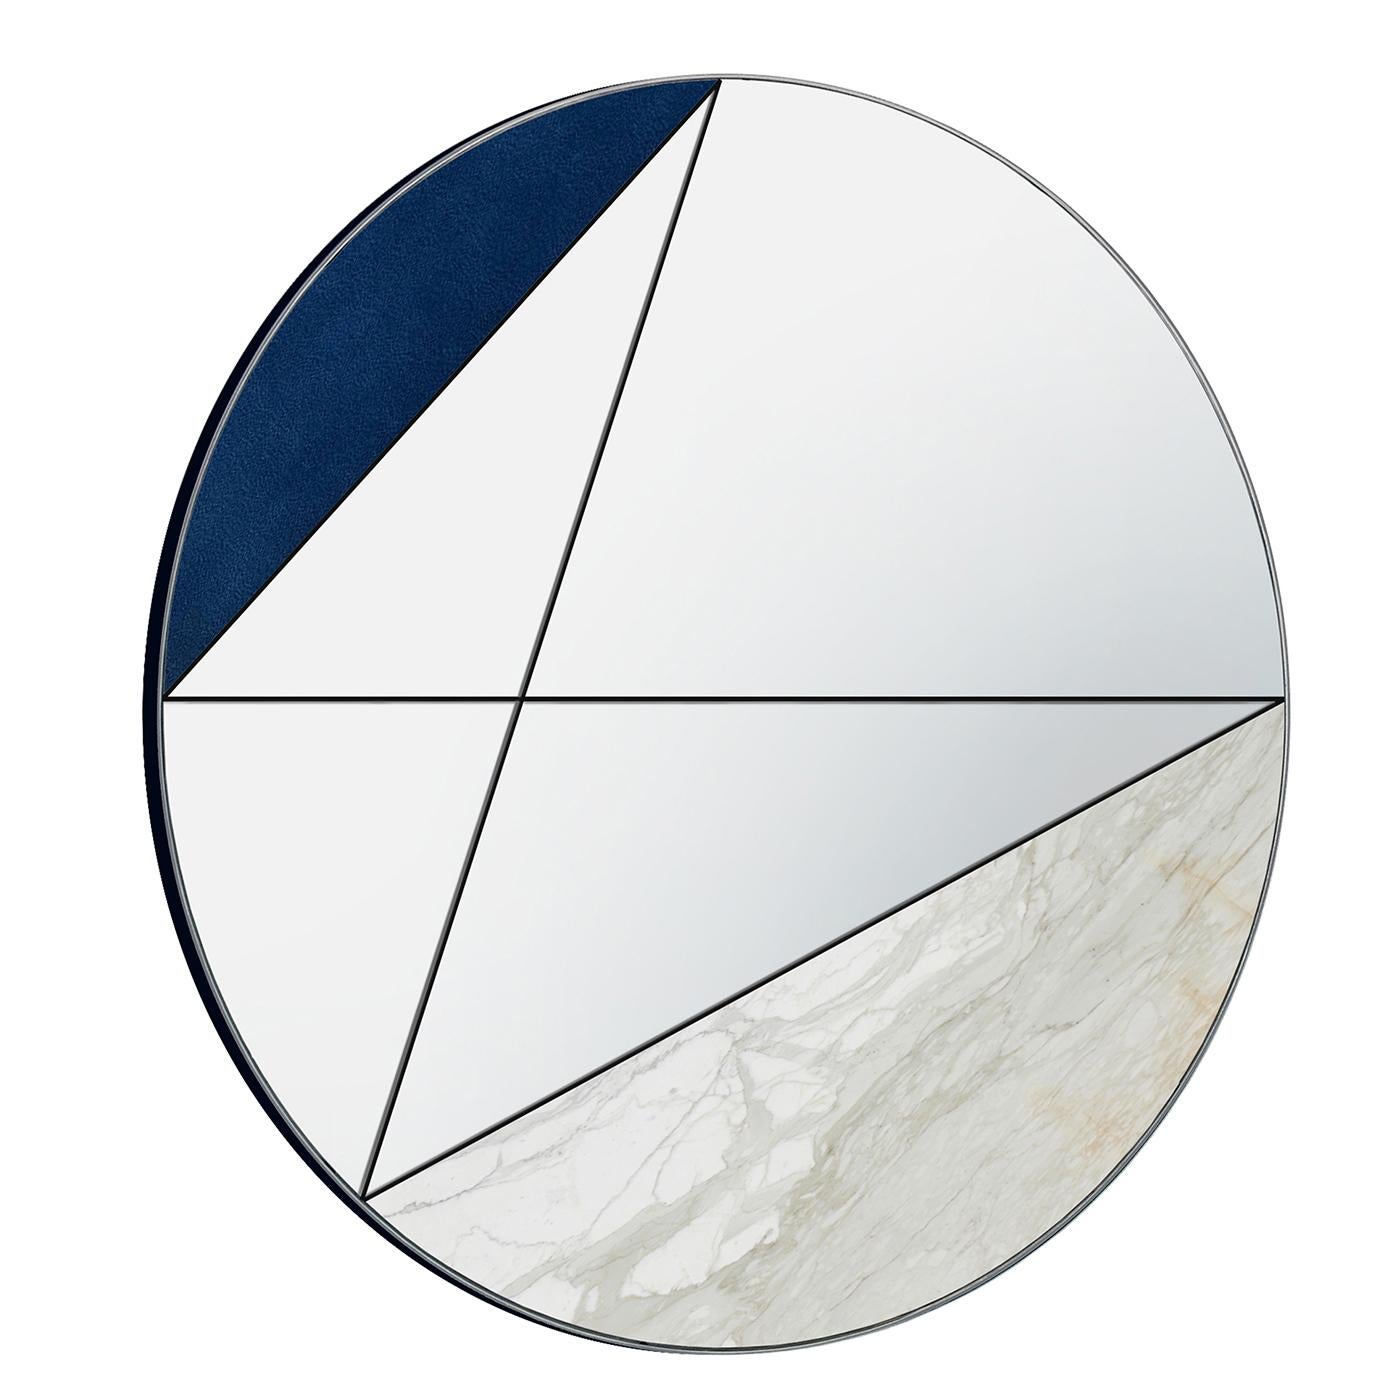 Fabriqué entièrement à la main, ce qui garantit qu'il n'y a pas deux pièces identiques, le miroir Clepsydra I se caractérise par une association unique de cuir bleu et de marbre Calacatta. Le miroir est complété par ses lignes en acier inoxydable,